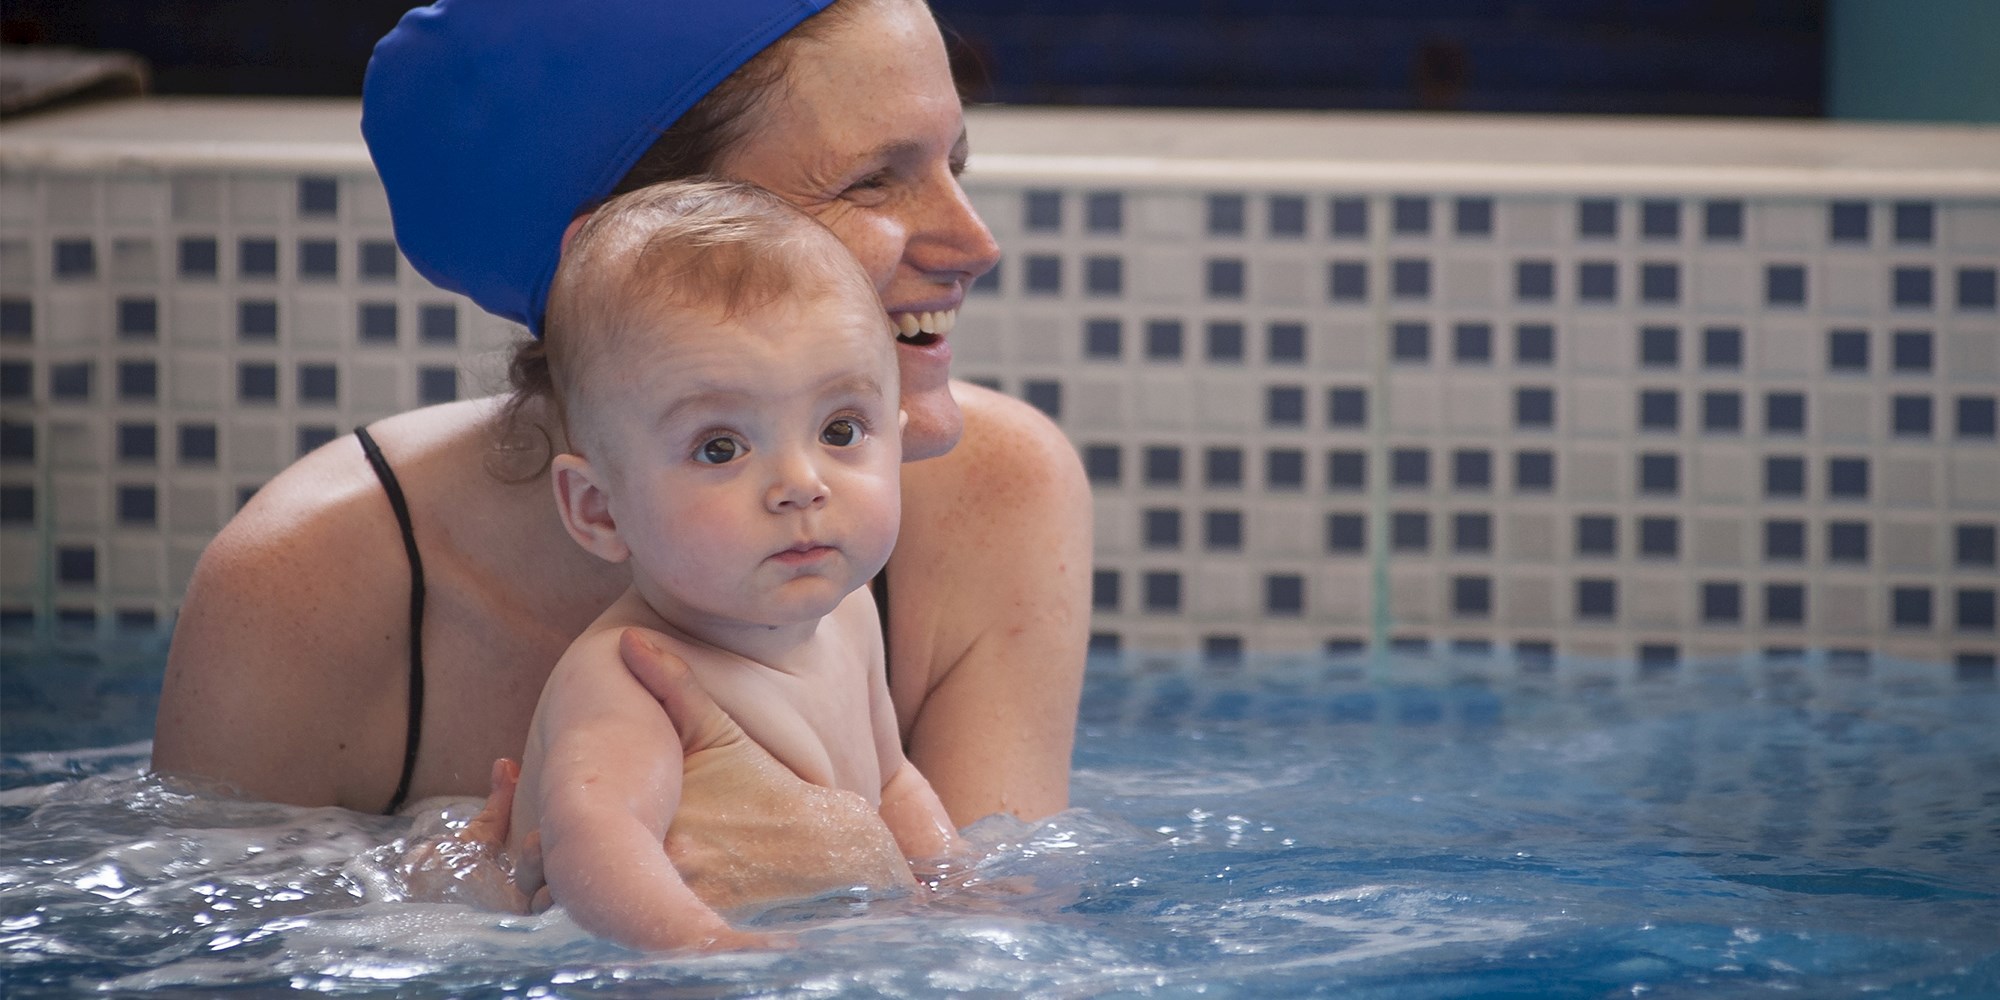 Gå til babybevægelse i vand med dit barn hos FOF Sydjylland